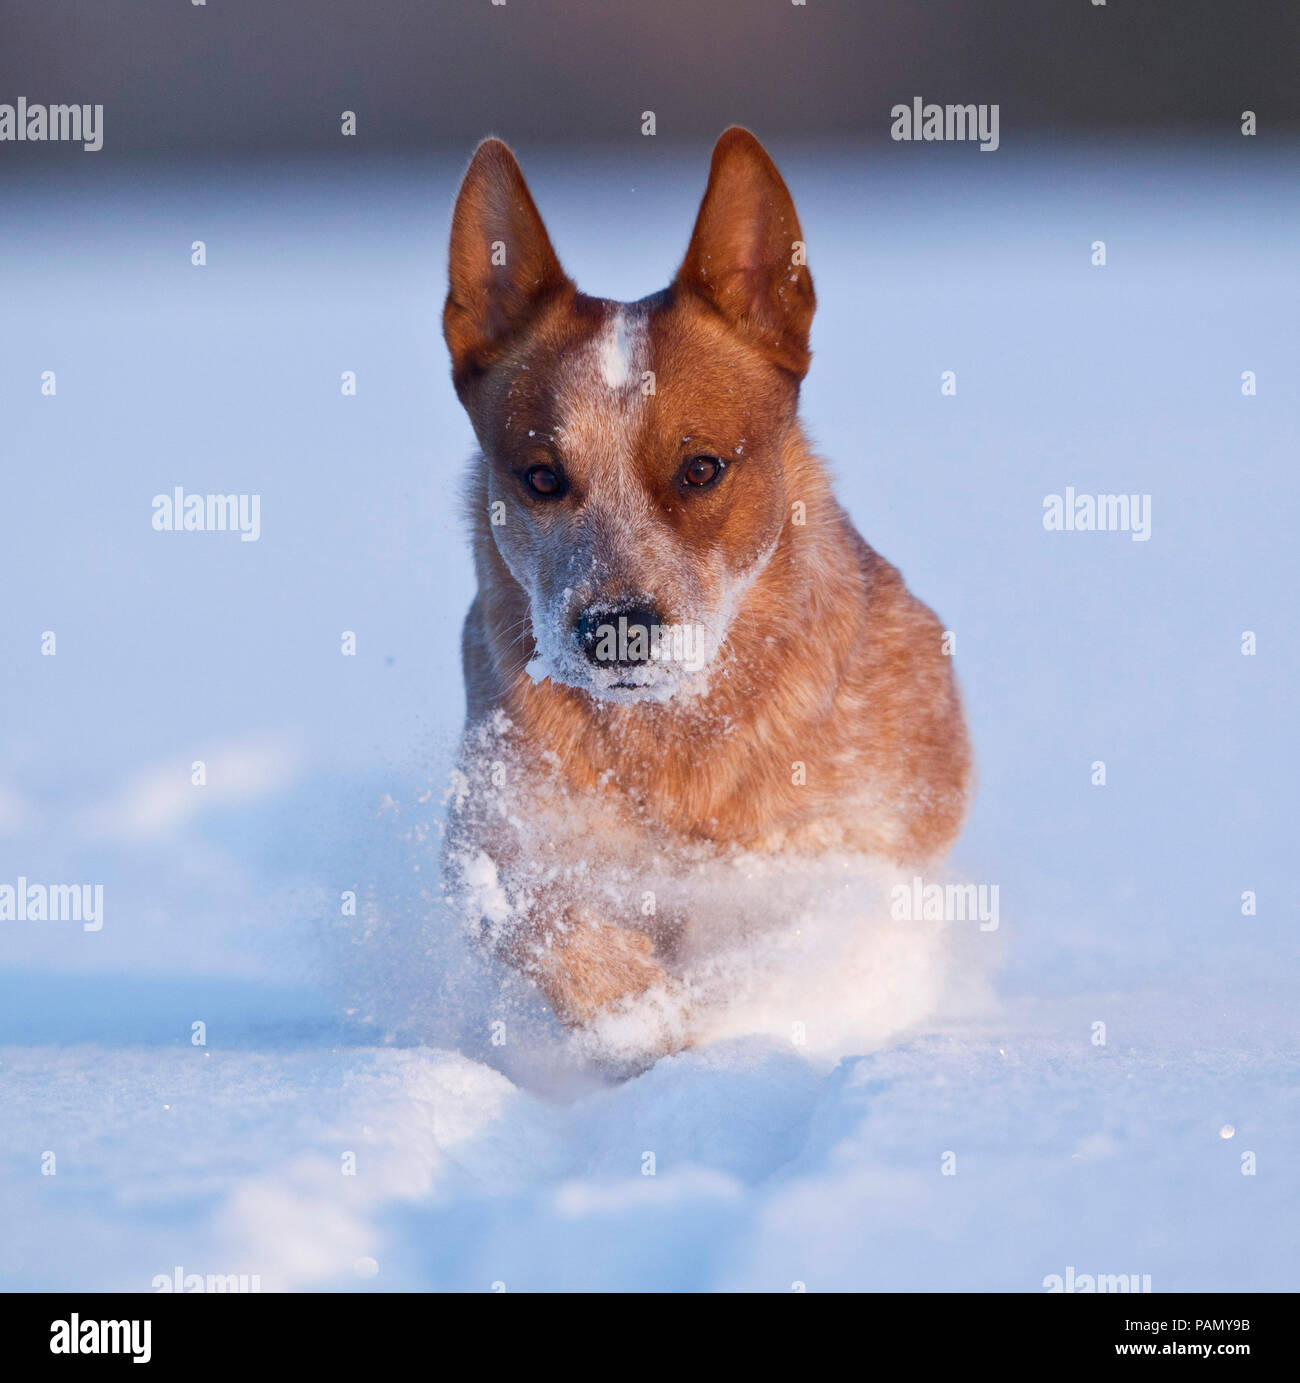 Australian Cattle Dog s'exécutant dans la neige. Allemagne Banque D'Images